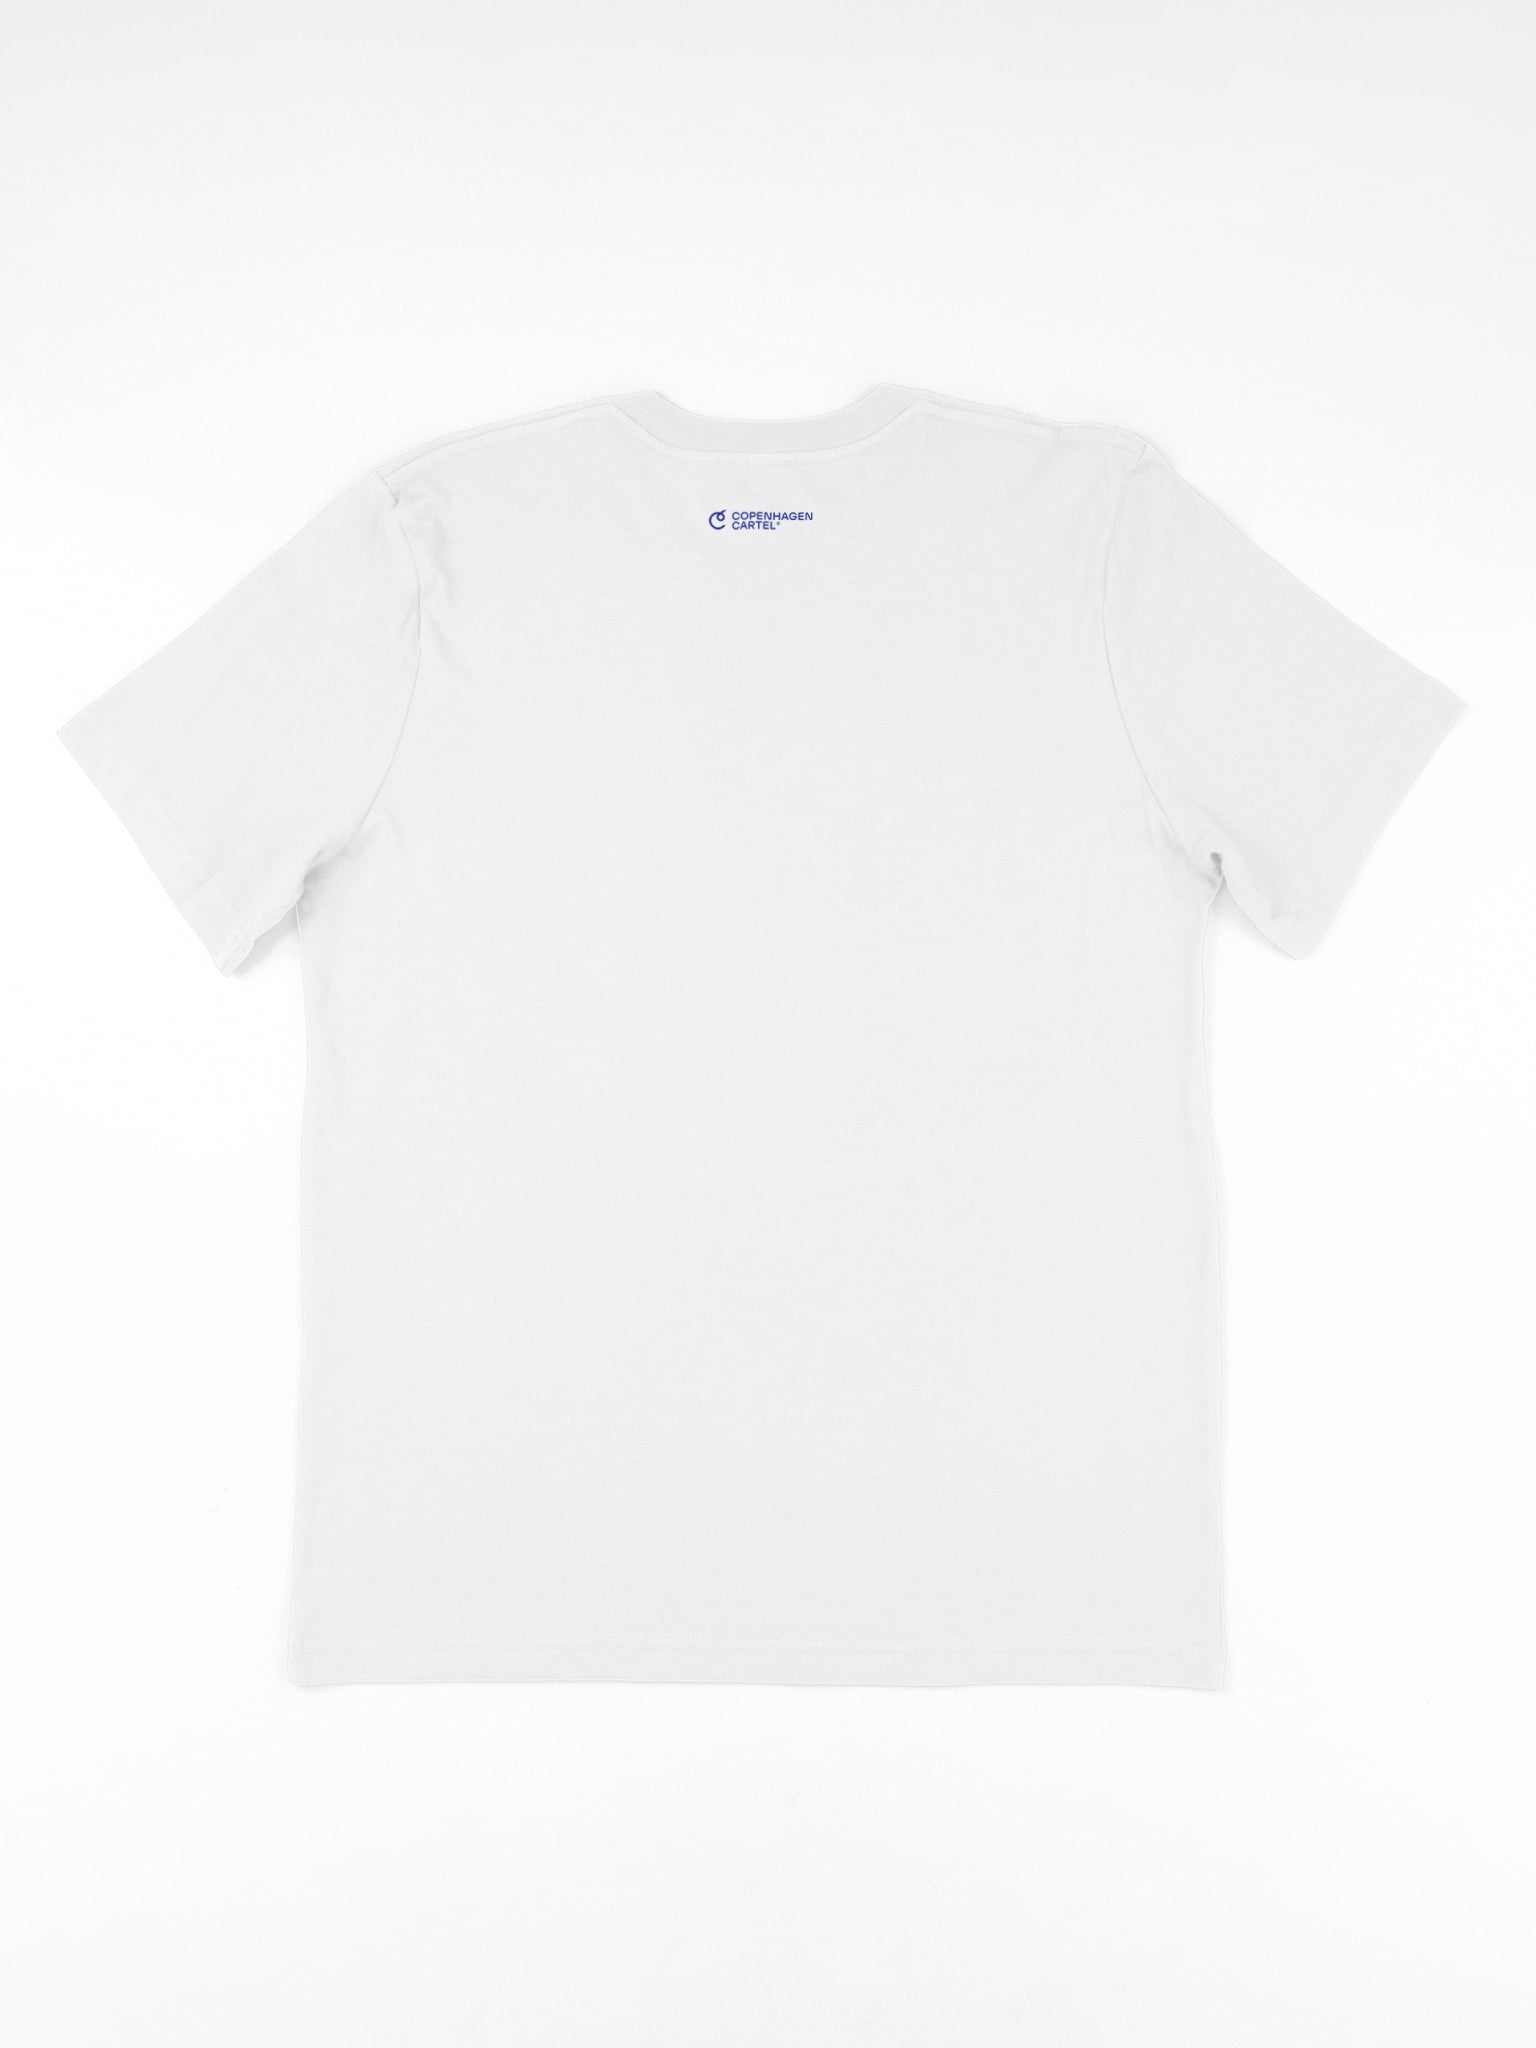 Organic cotton unisex Ocean t-shirt - Shell